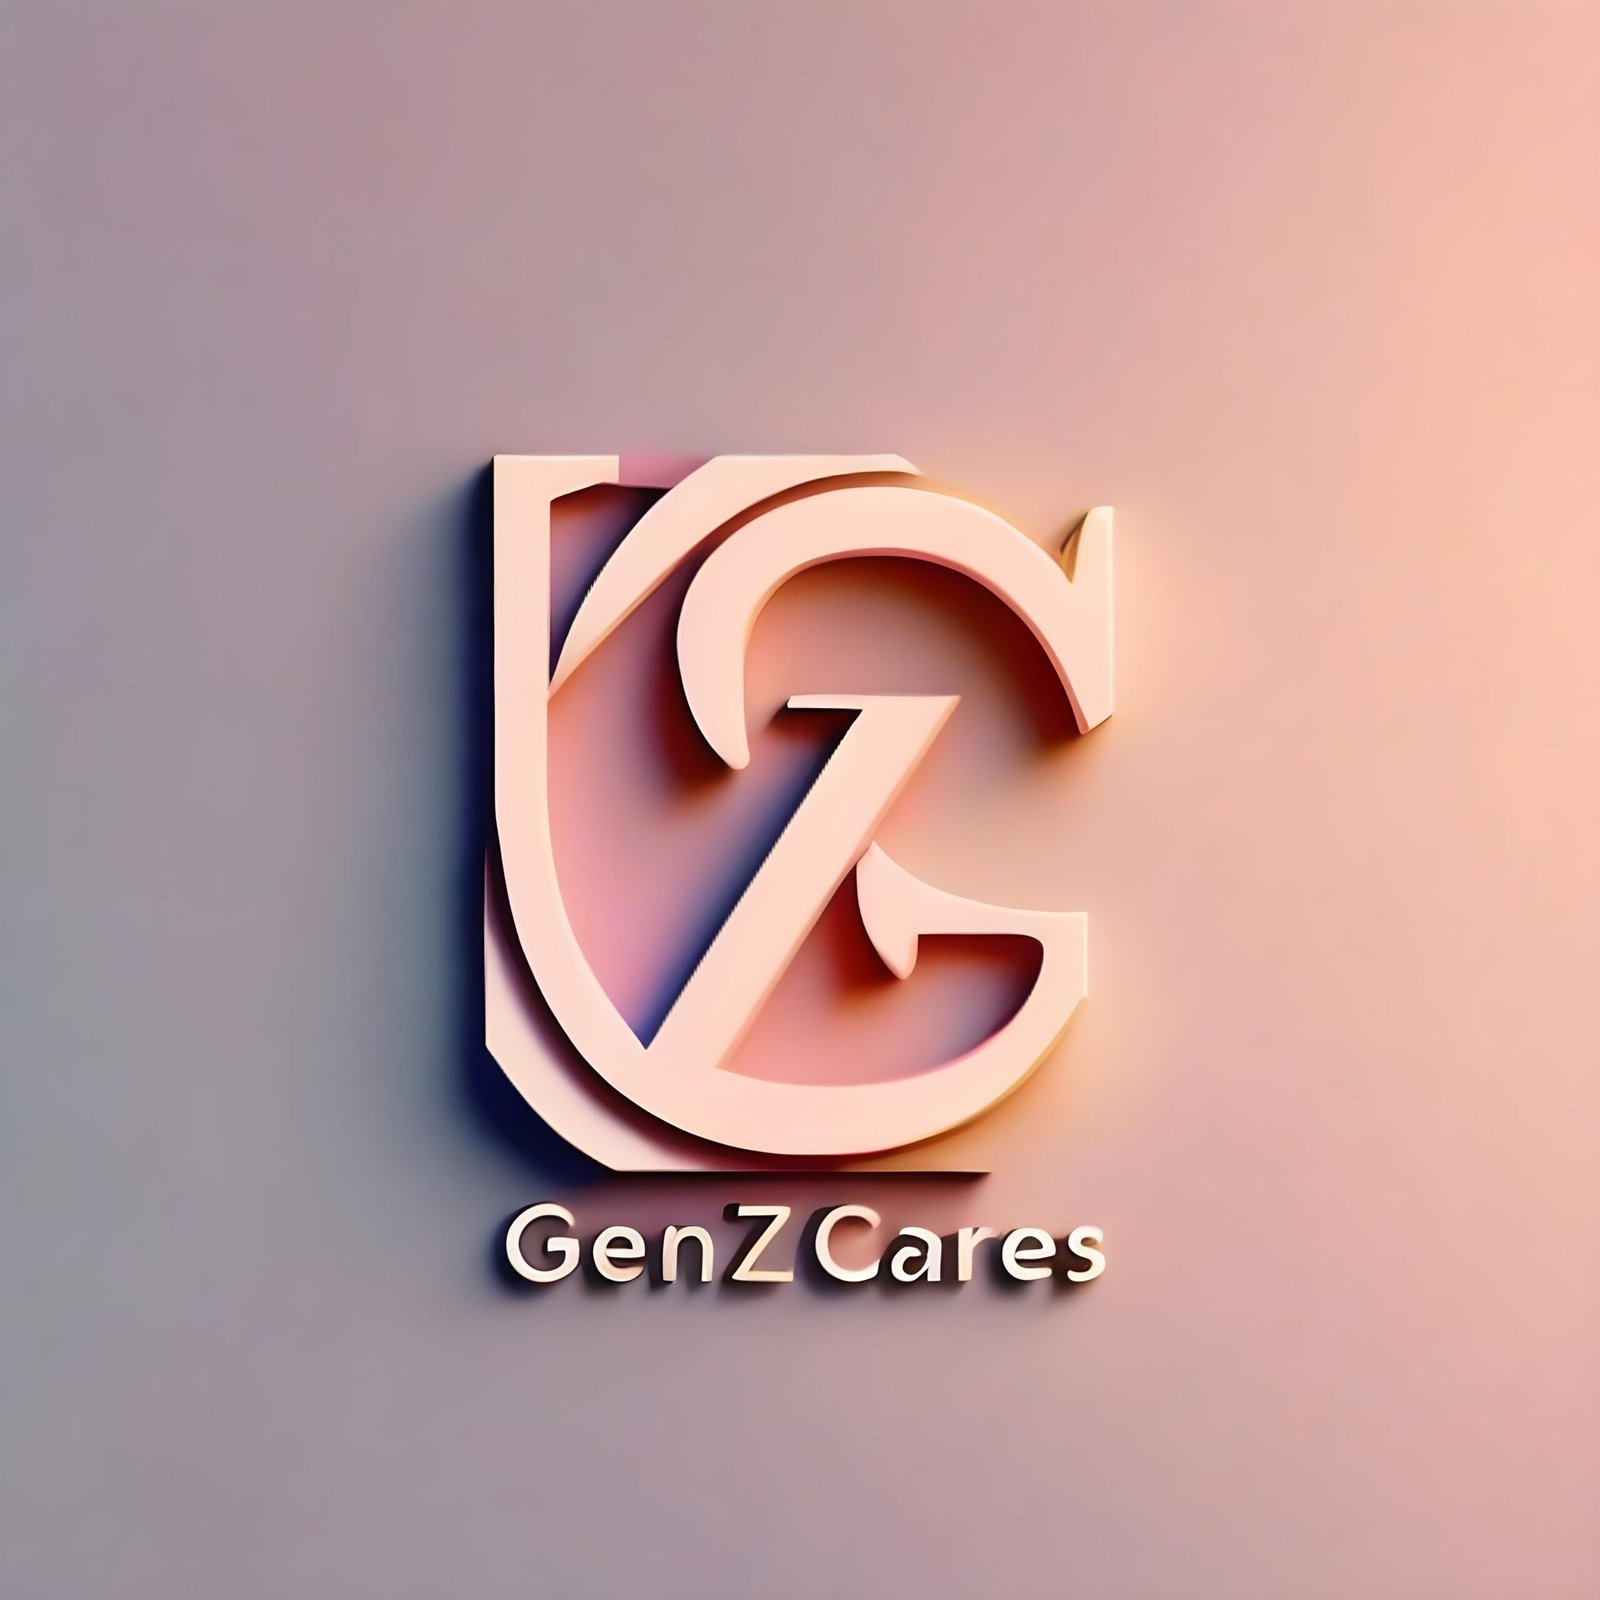 GenZ Cares